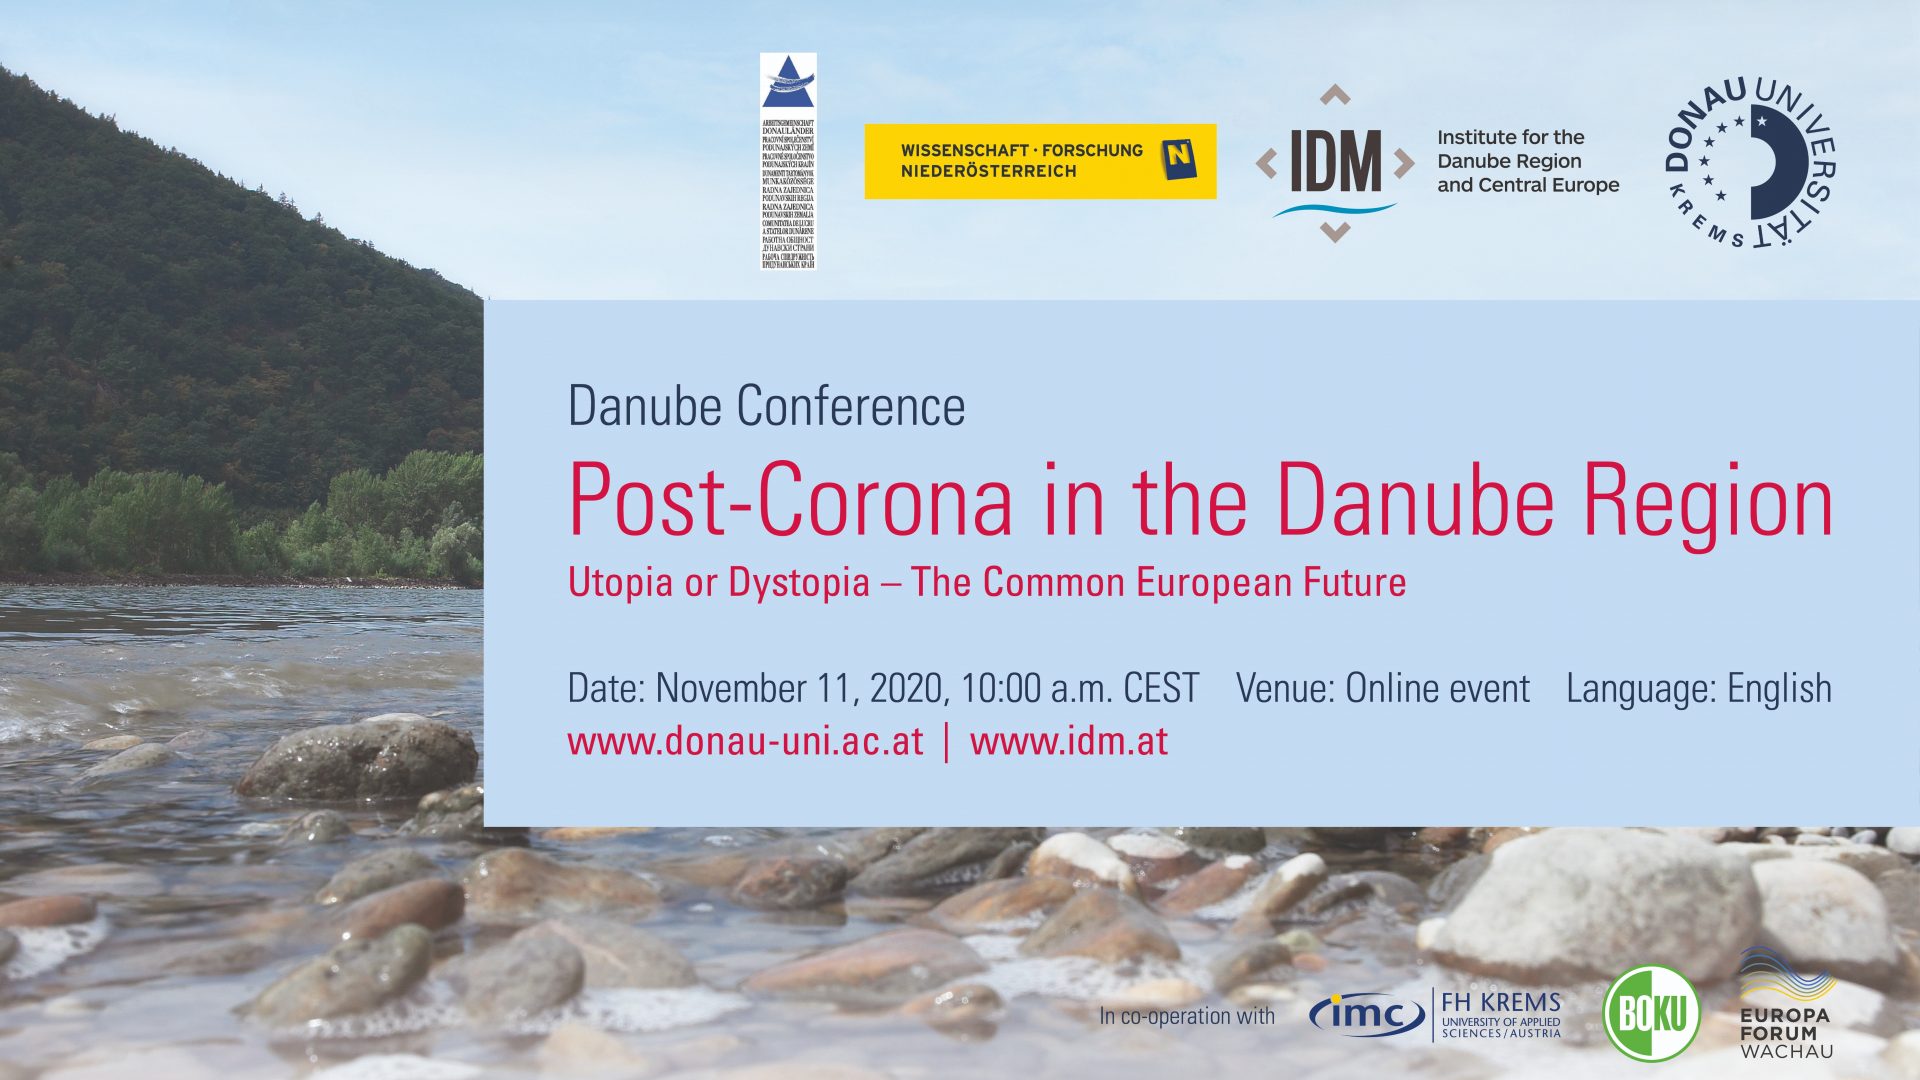 Danube Conference 2020 - Post-Corona in the Danube Region